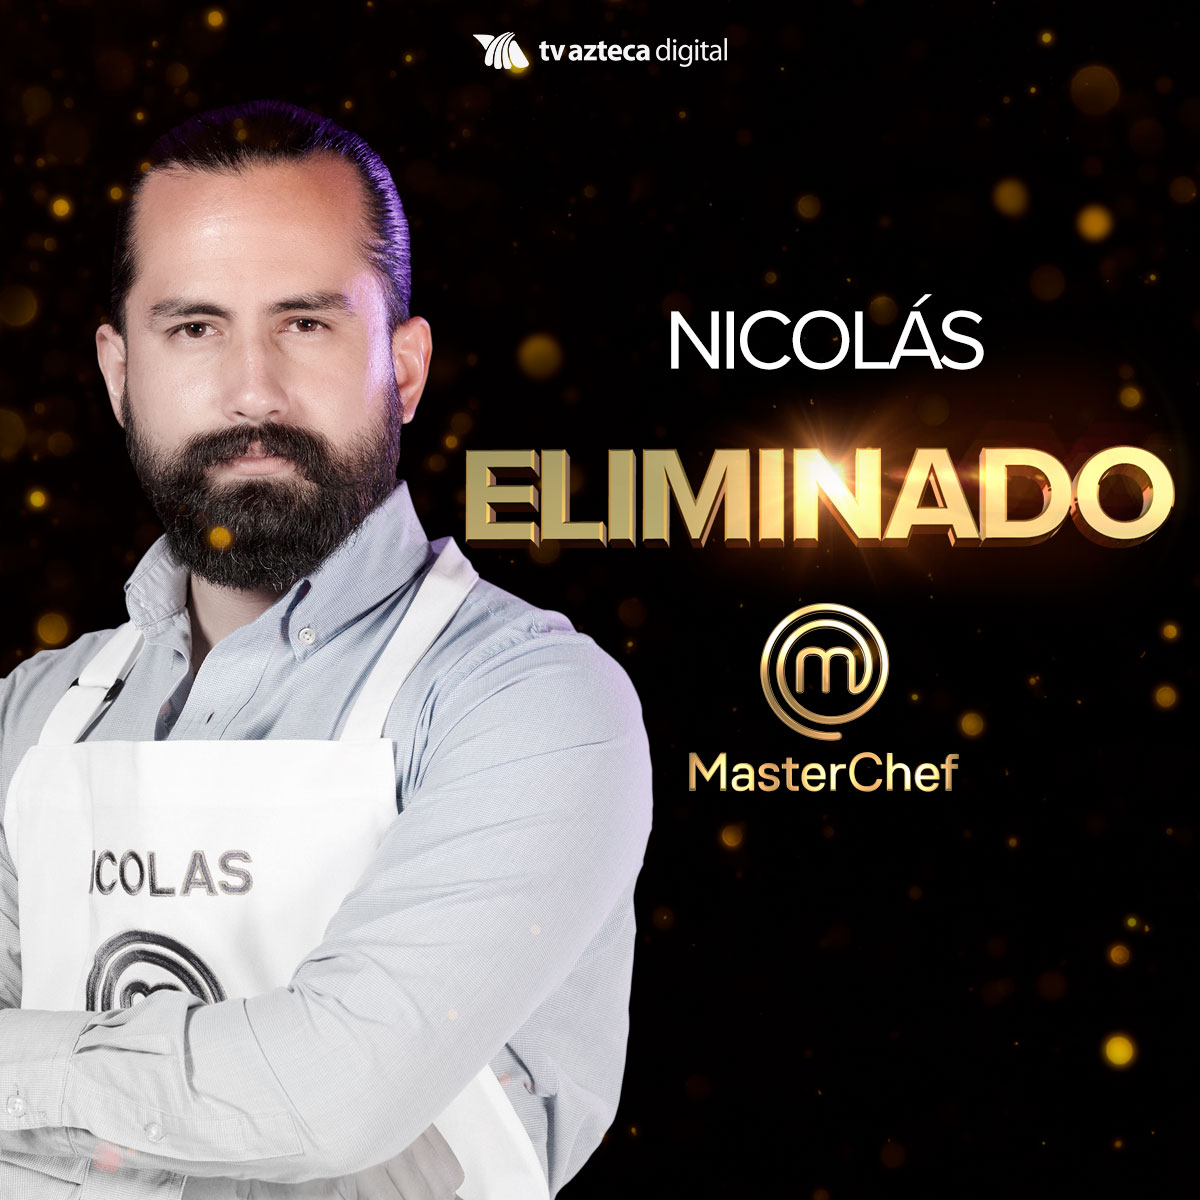 Nicolás fue el quinto eliminado de “MasterChef” edición 2020